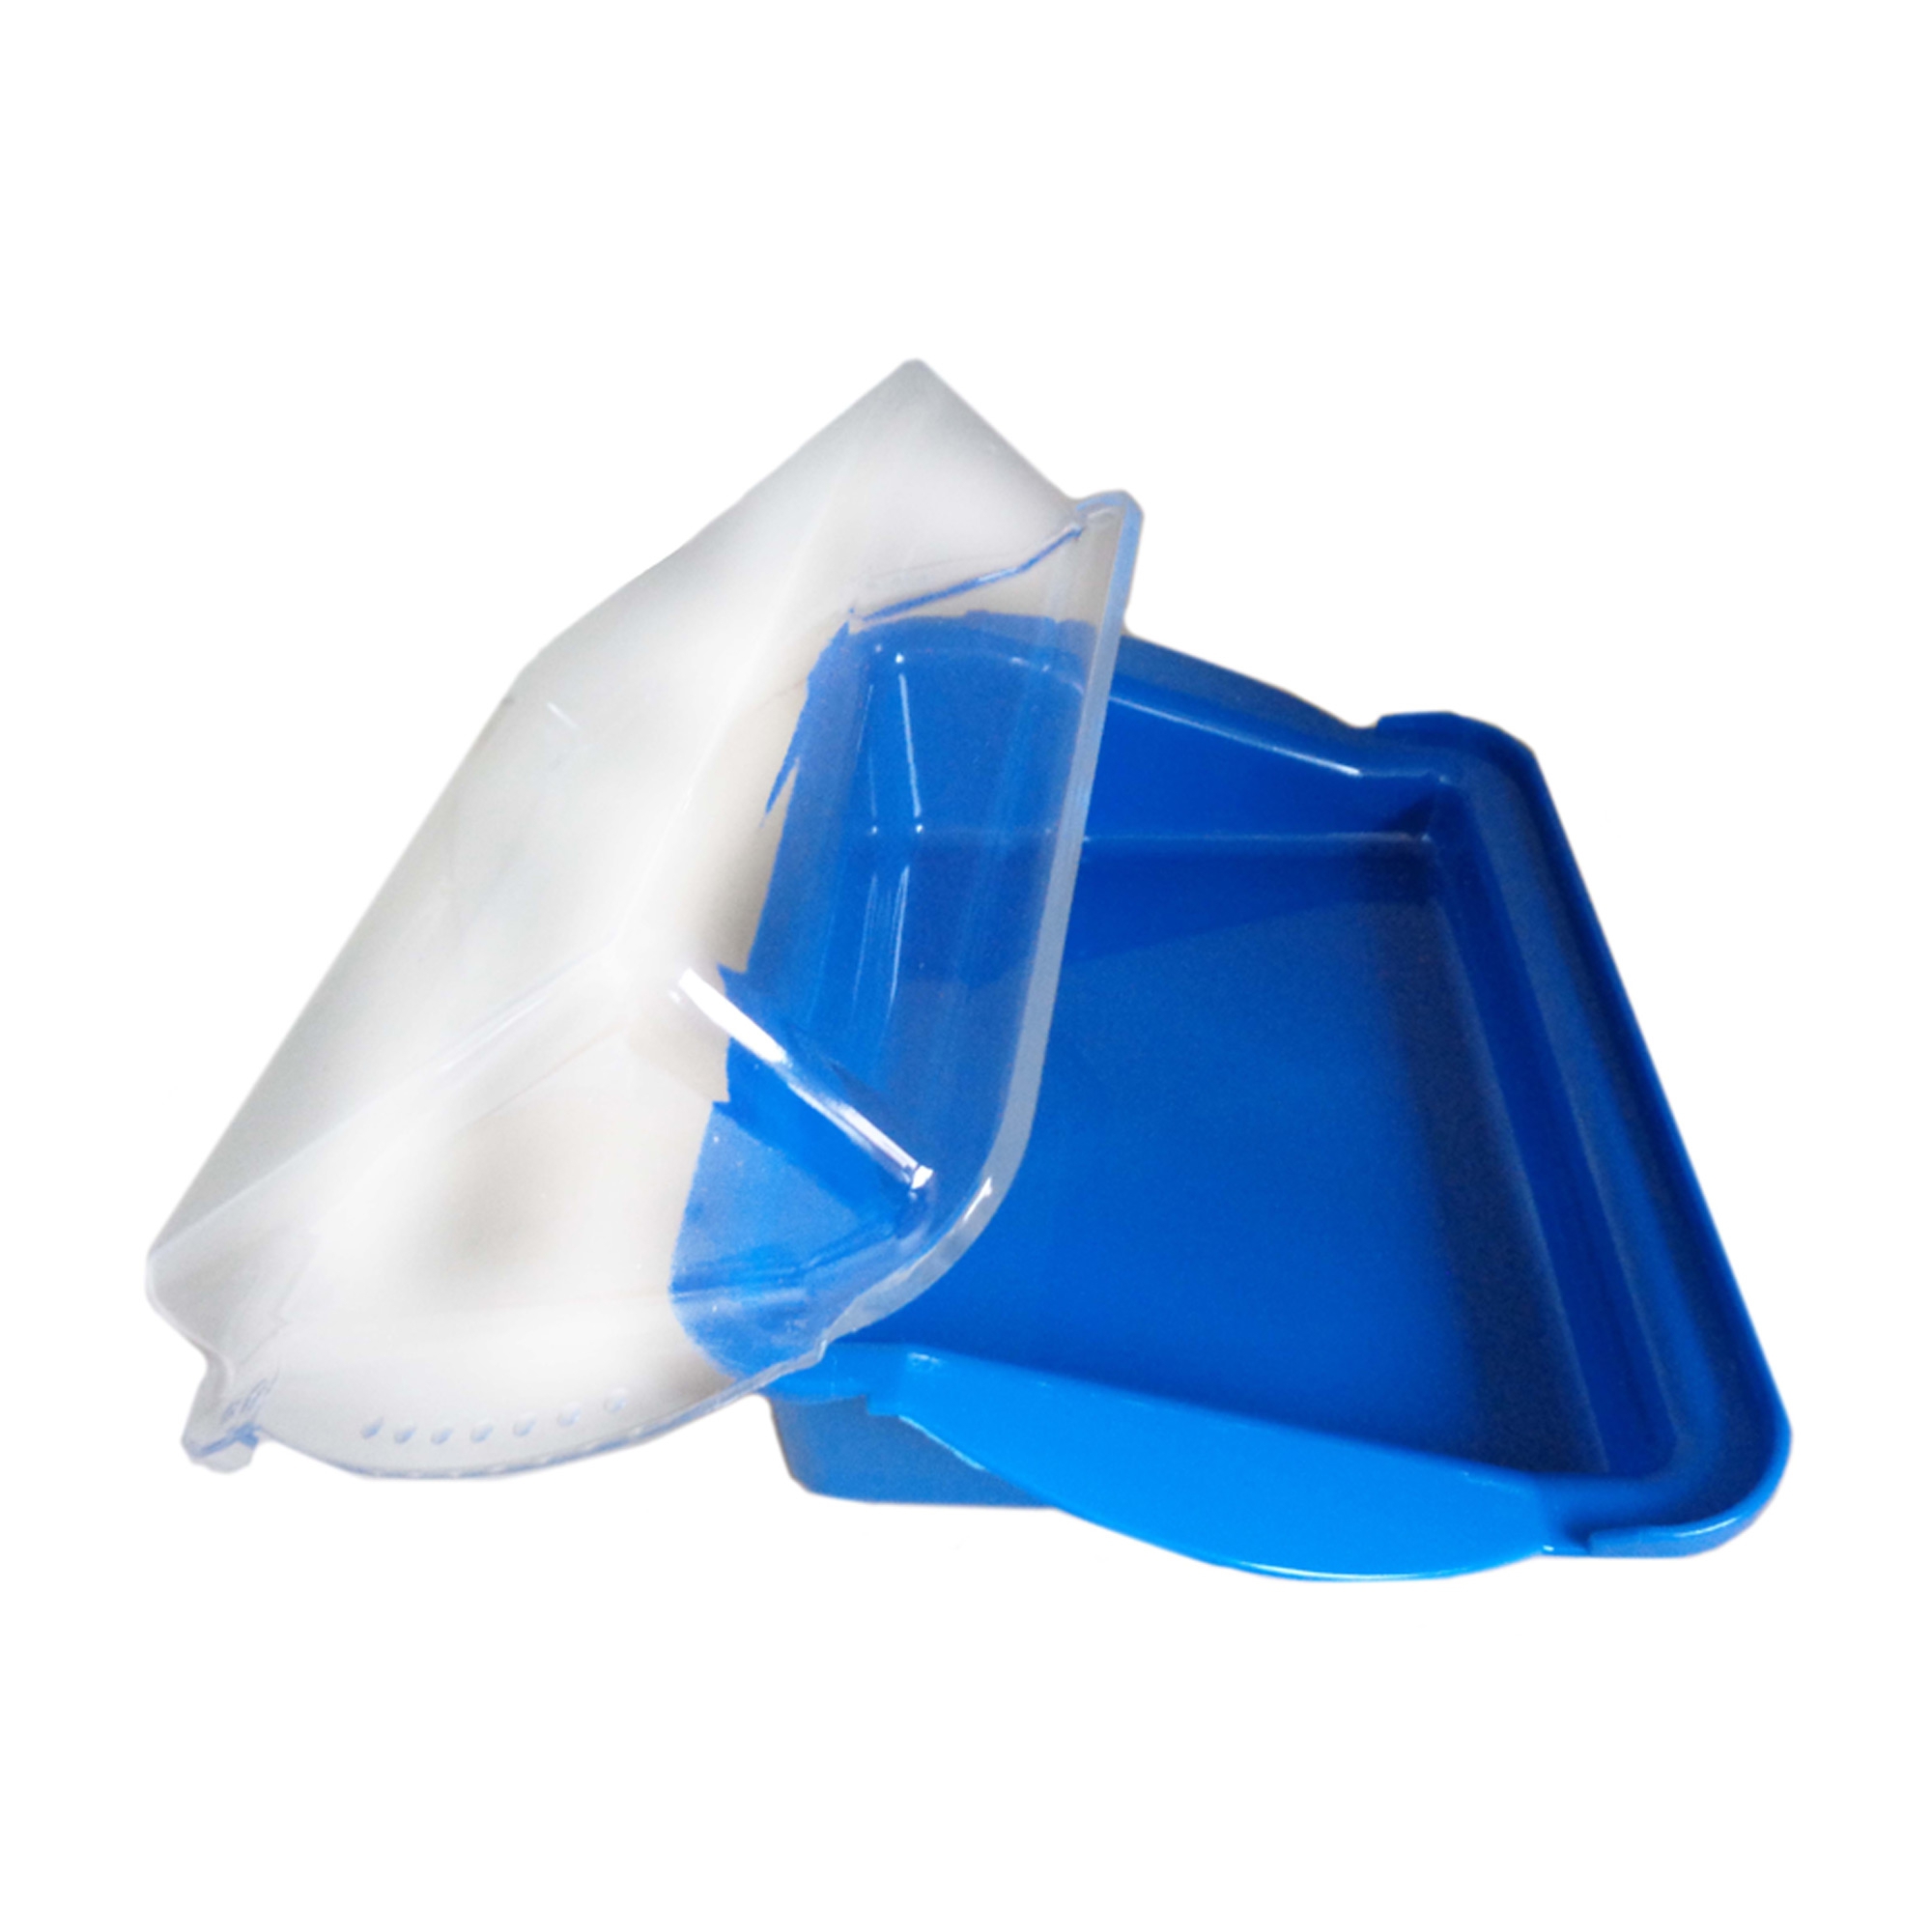 Sonja Plastic - crispbread box - PS blue/clear